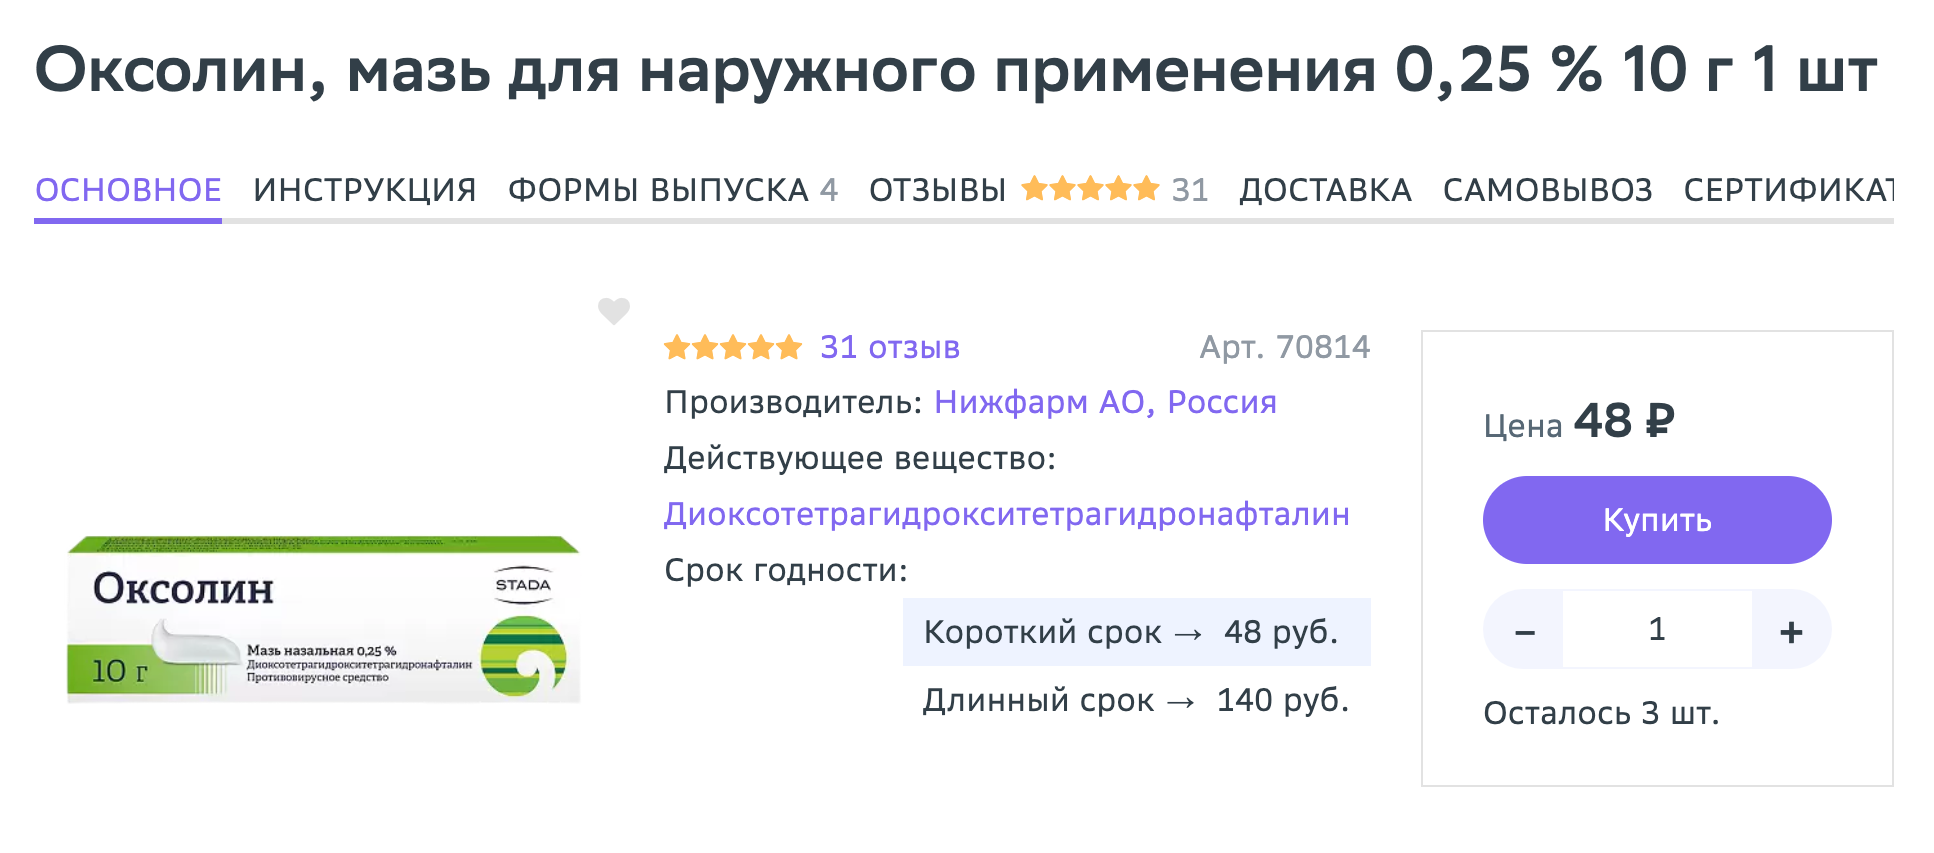 Оксолиновая мазь стоит недорого, но защититься от ОРВИ не поможет. Источник: eapteka.ru